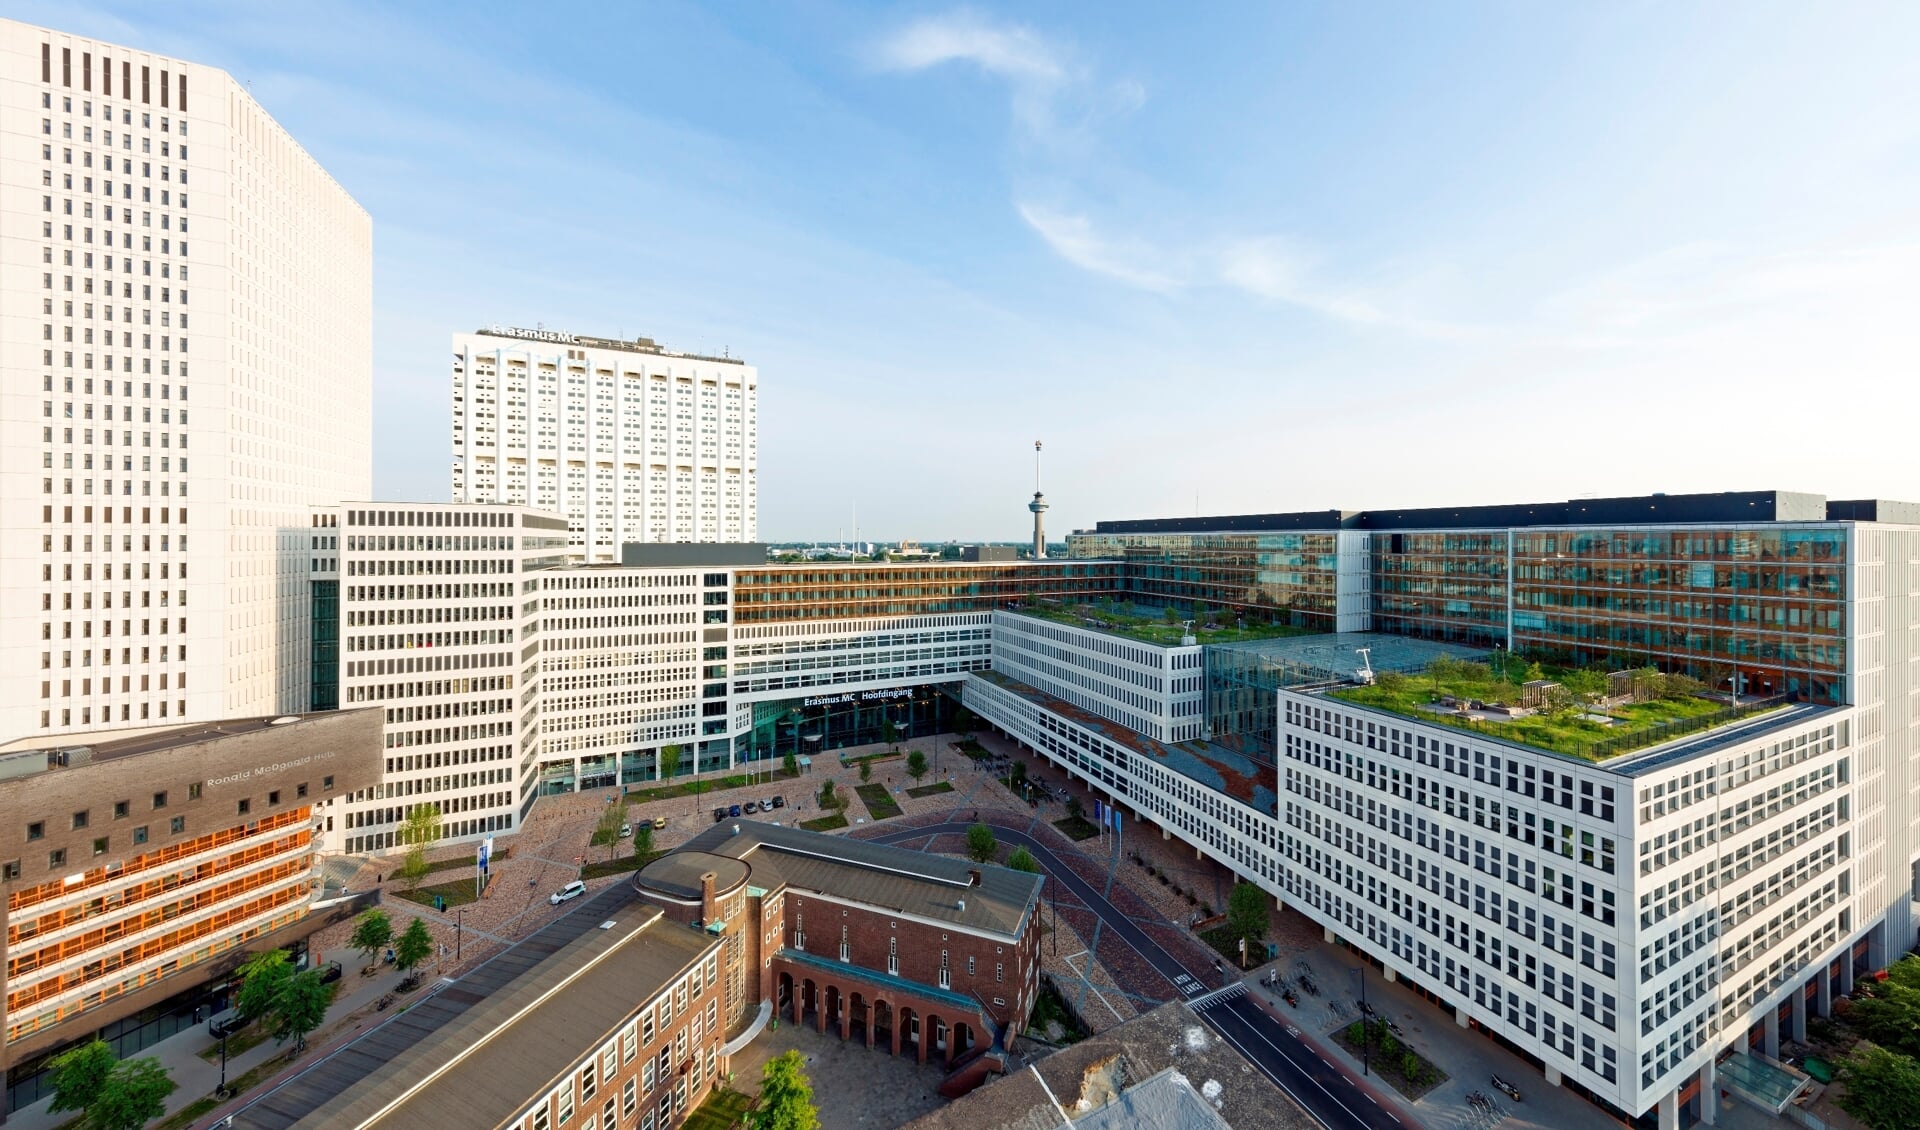 Rotterdam sloot in 2019 met meer dan honderd bedrijven en maatschappelijke organisaties, en nu ook met de Rotterdamse ziekenhuizen, het Rotterdams Klimaatakkoord. Huidige doelstelling: CO2- uitstoot verder terugdringen naar minimaal 55 procent CO2-reductie in 2030. Foto: Rob van Esch/Make it Happen